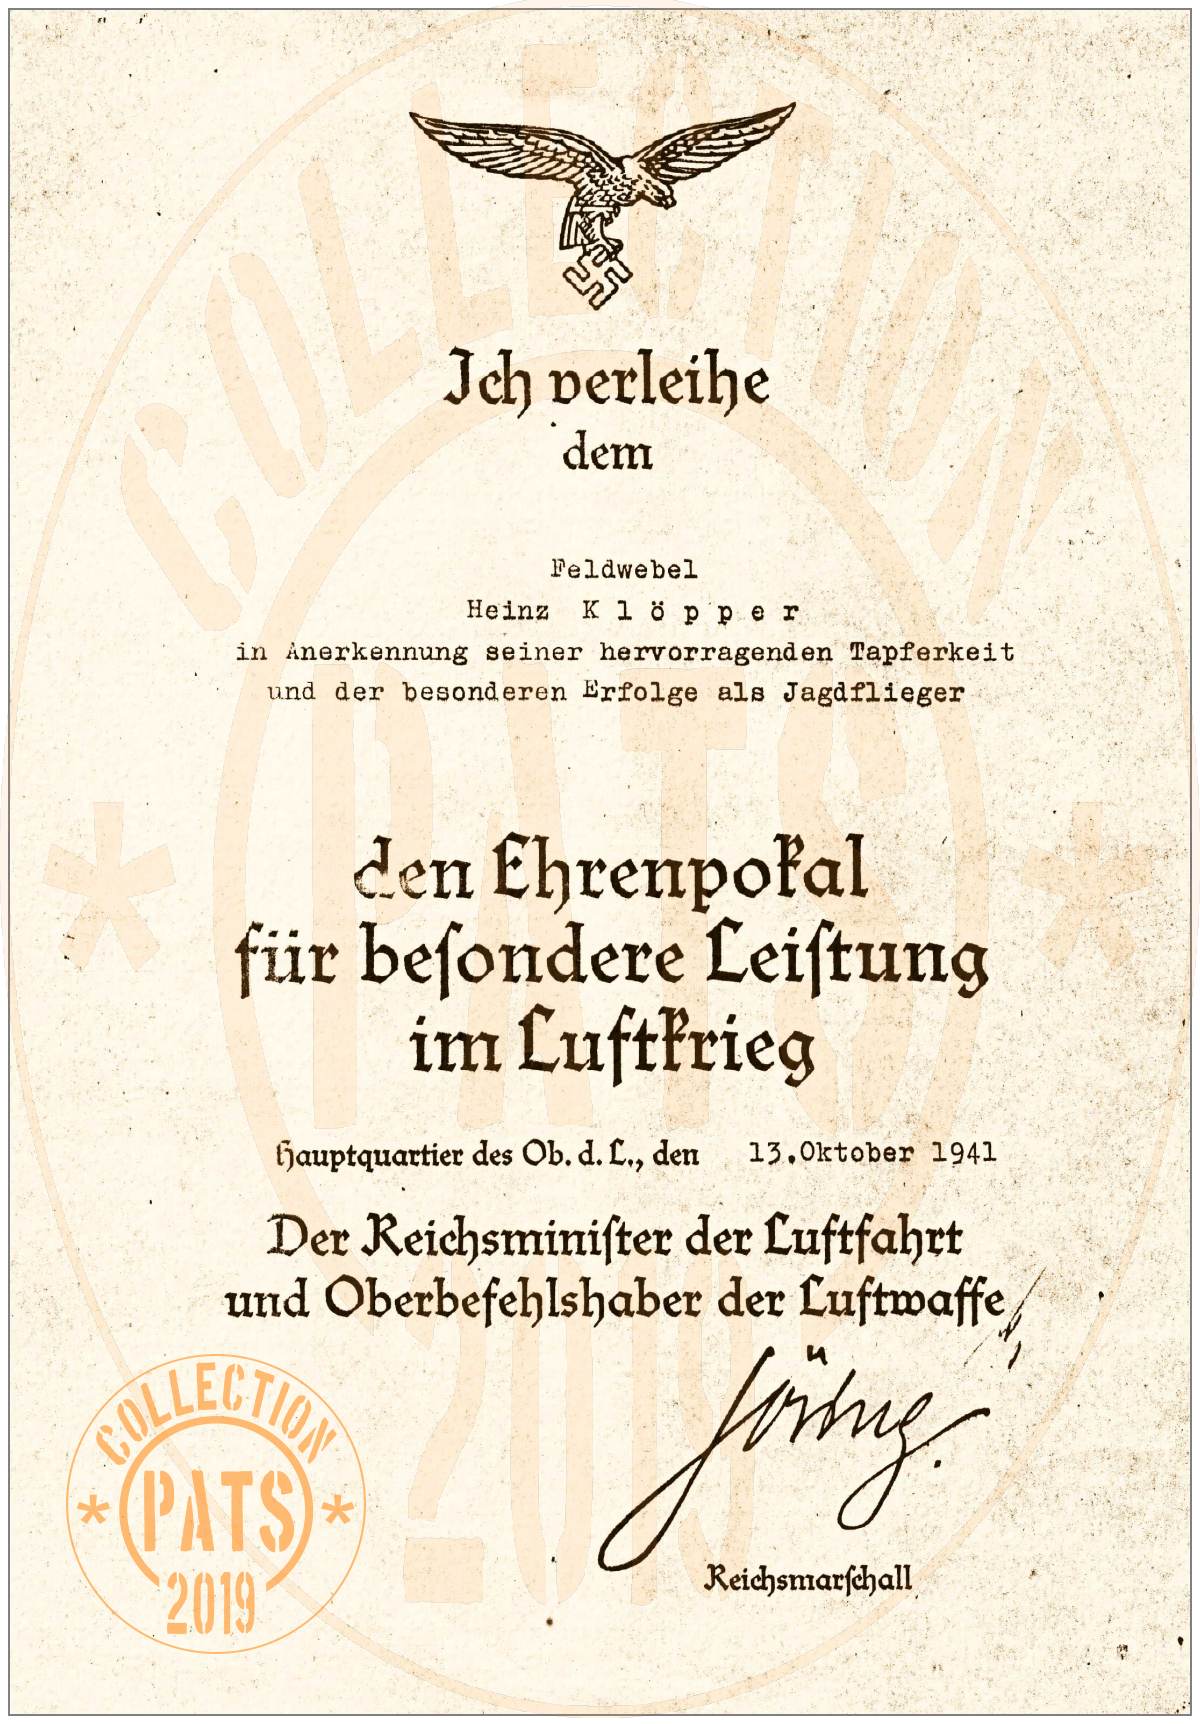 Feldwebel Heinz Kurt Albert Klöpper - Den Ehrenpokal, 13 Okt 1941